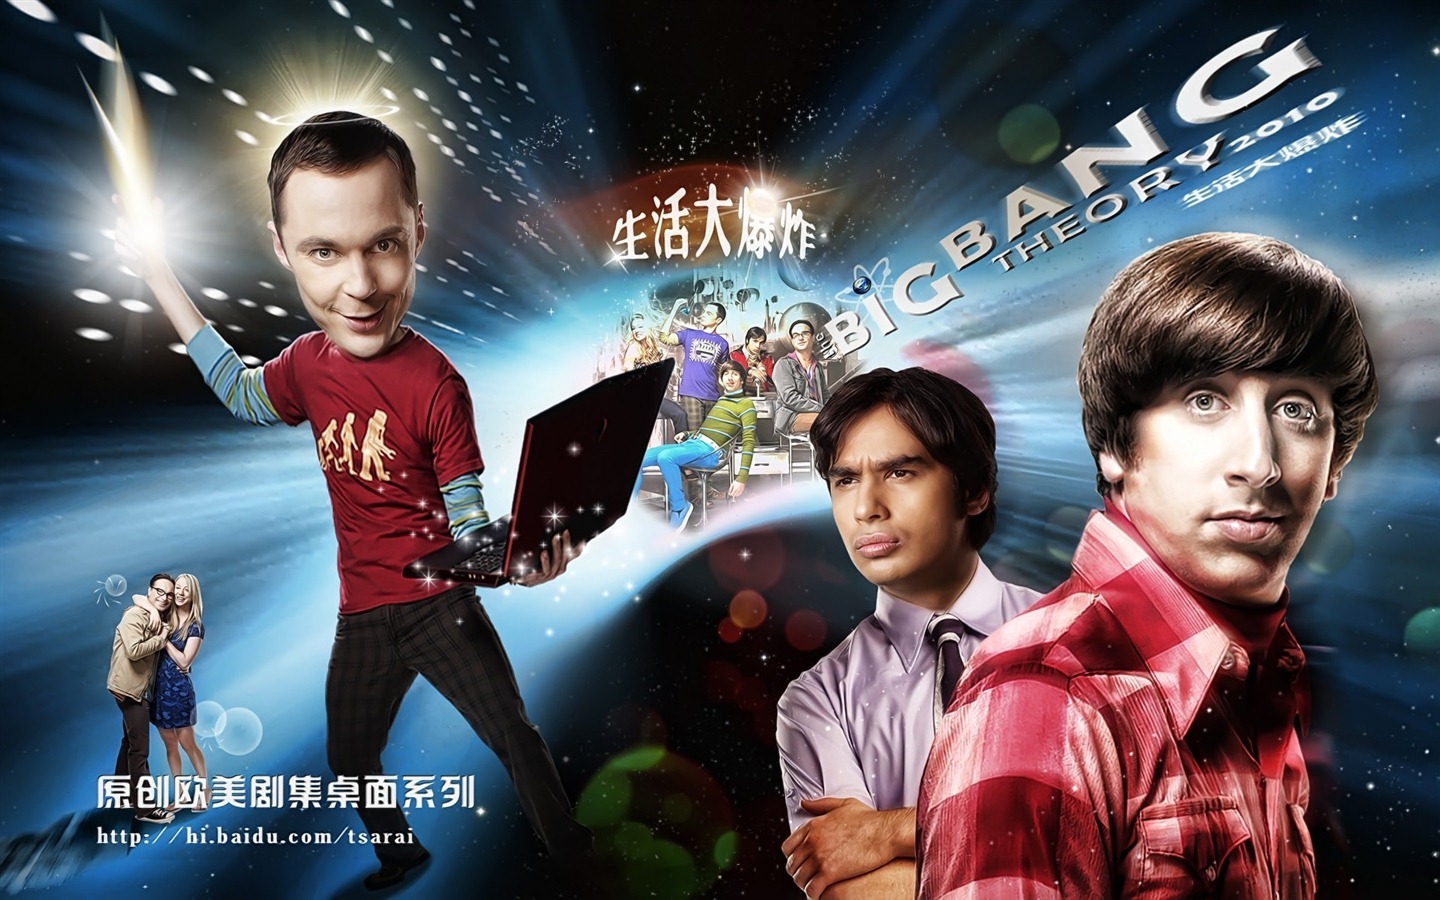 The Big Bang Theory 生活大爆炸 电视剧高清壁纸27 - 1440x900